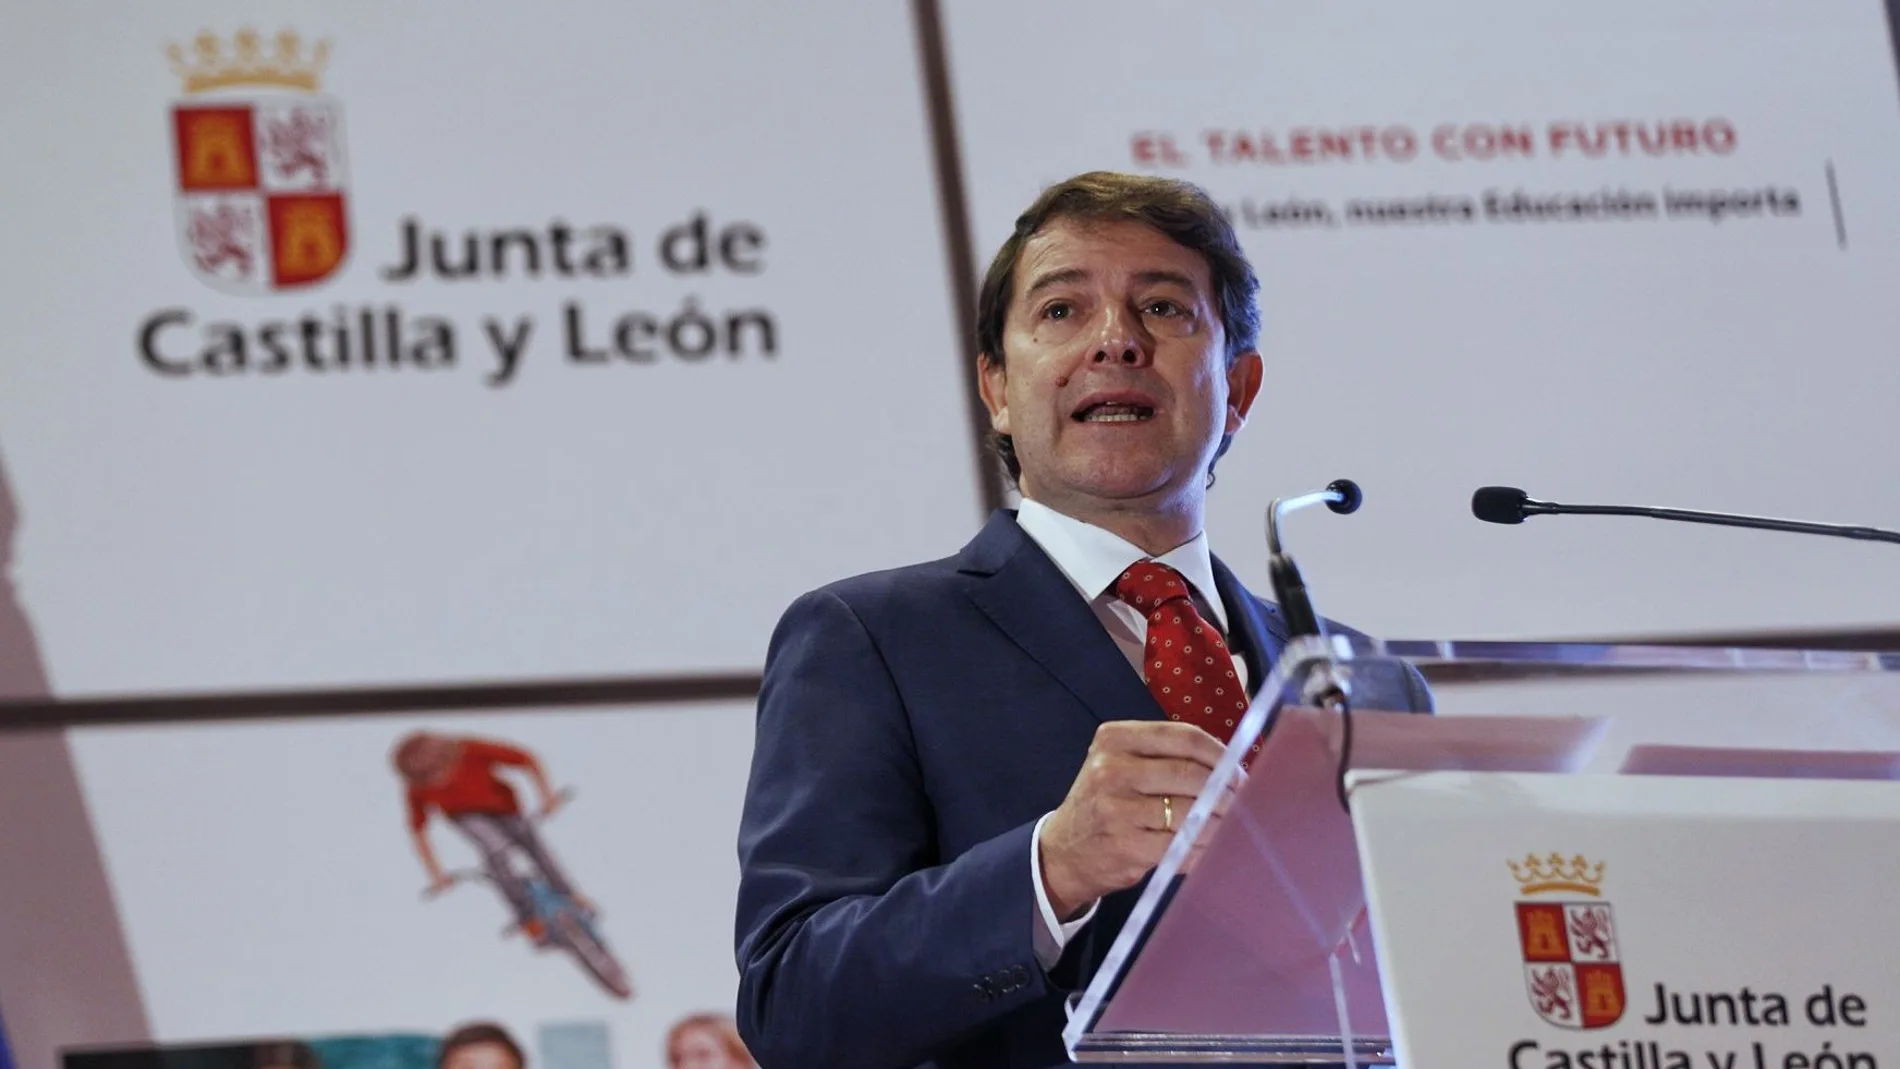 El presidente de la Junta de Castilla y León, Alfonso Fernández Mañueco, inaugura el curso 2021-2022 de las enseñanzas escolares no universitarias de Castilla y León